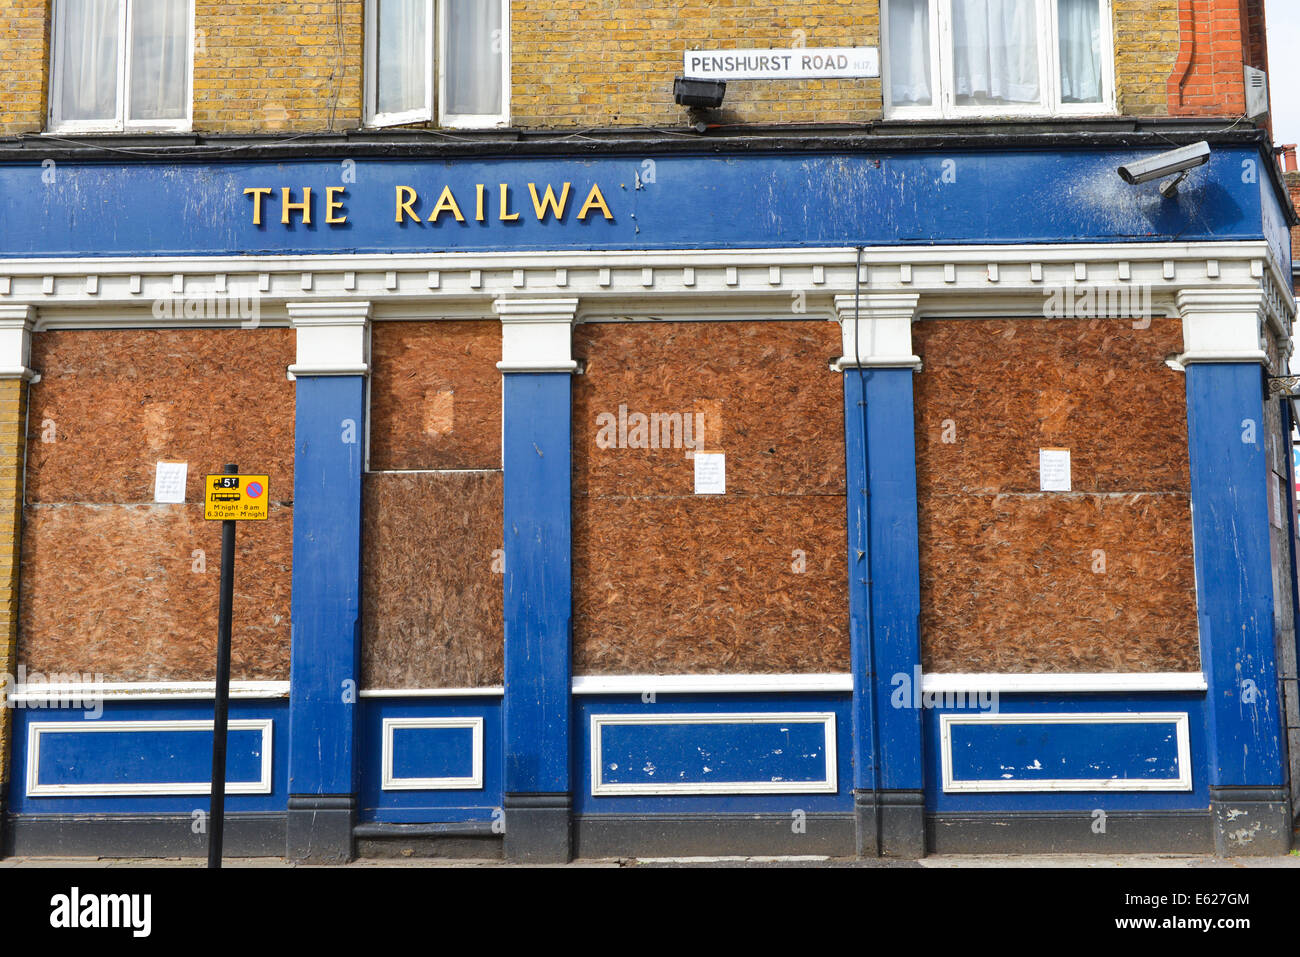 White Hart Lane, Tottenham, London, UK. 12 août 2014. La Railway Tavern Pub sur White Hart Lane est fermé et condamné, l'un des nombreux pubs fermés ou convertis dans la région. Crédit : Matthieu Chattle/Alamy Live News Banque D'Images